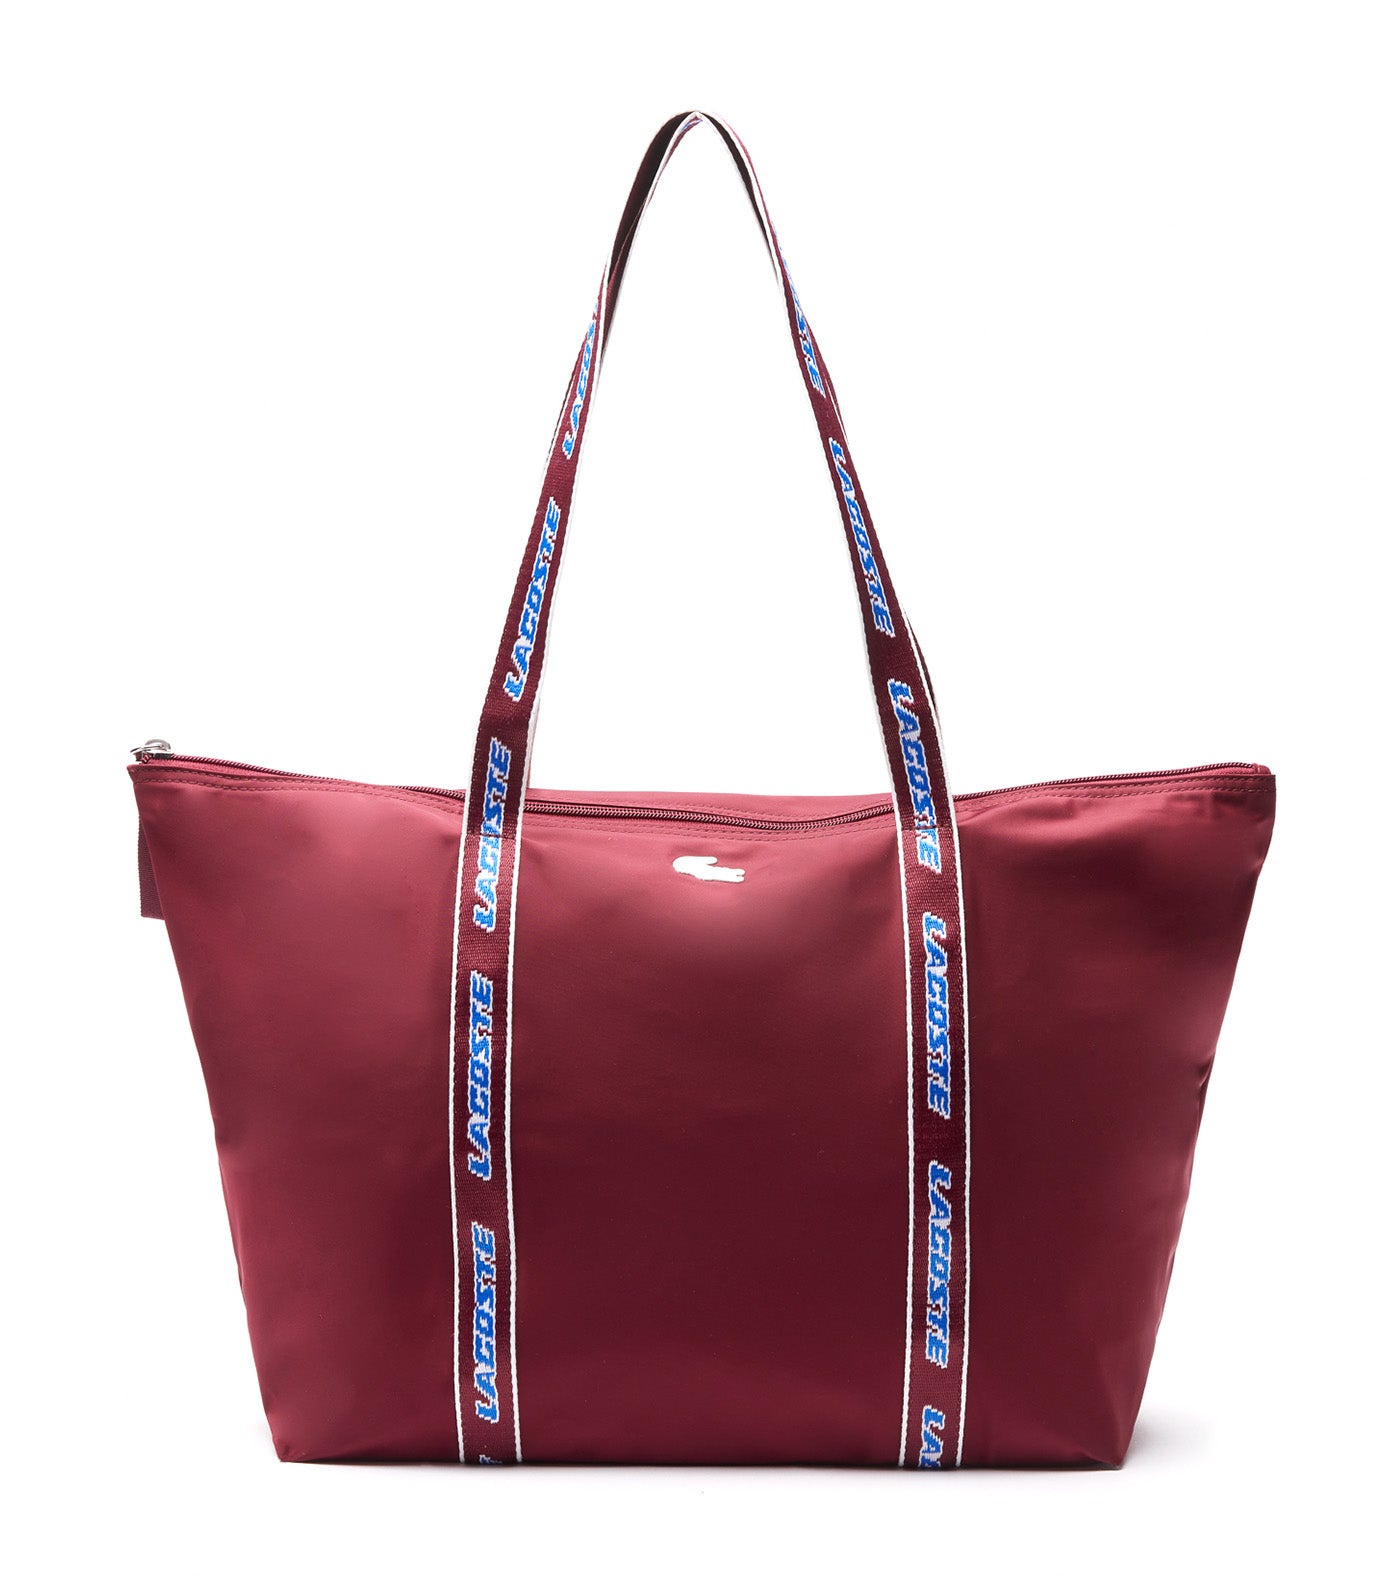 Lacoste Women's Lacoste Original Crossbody Bag Noir Cranberry Blanc